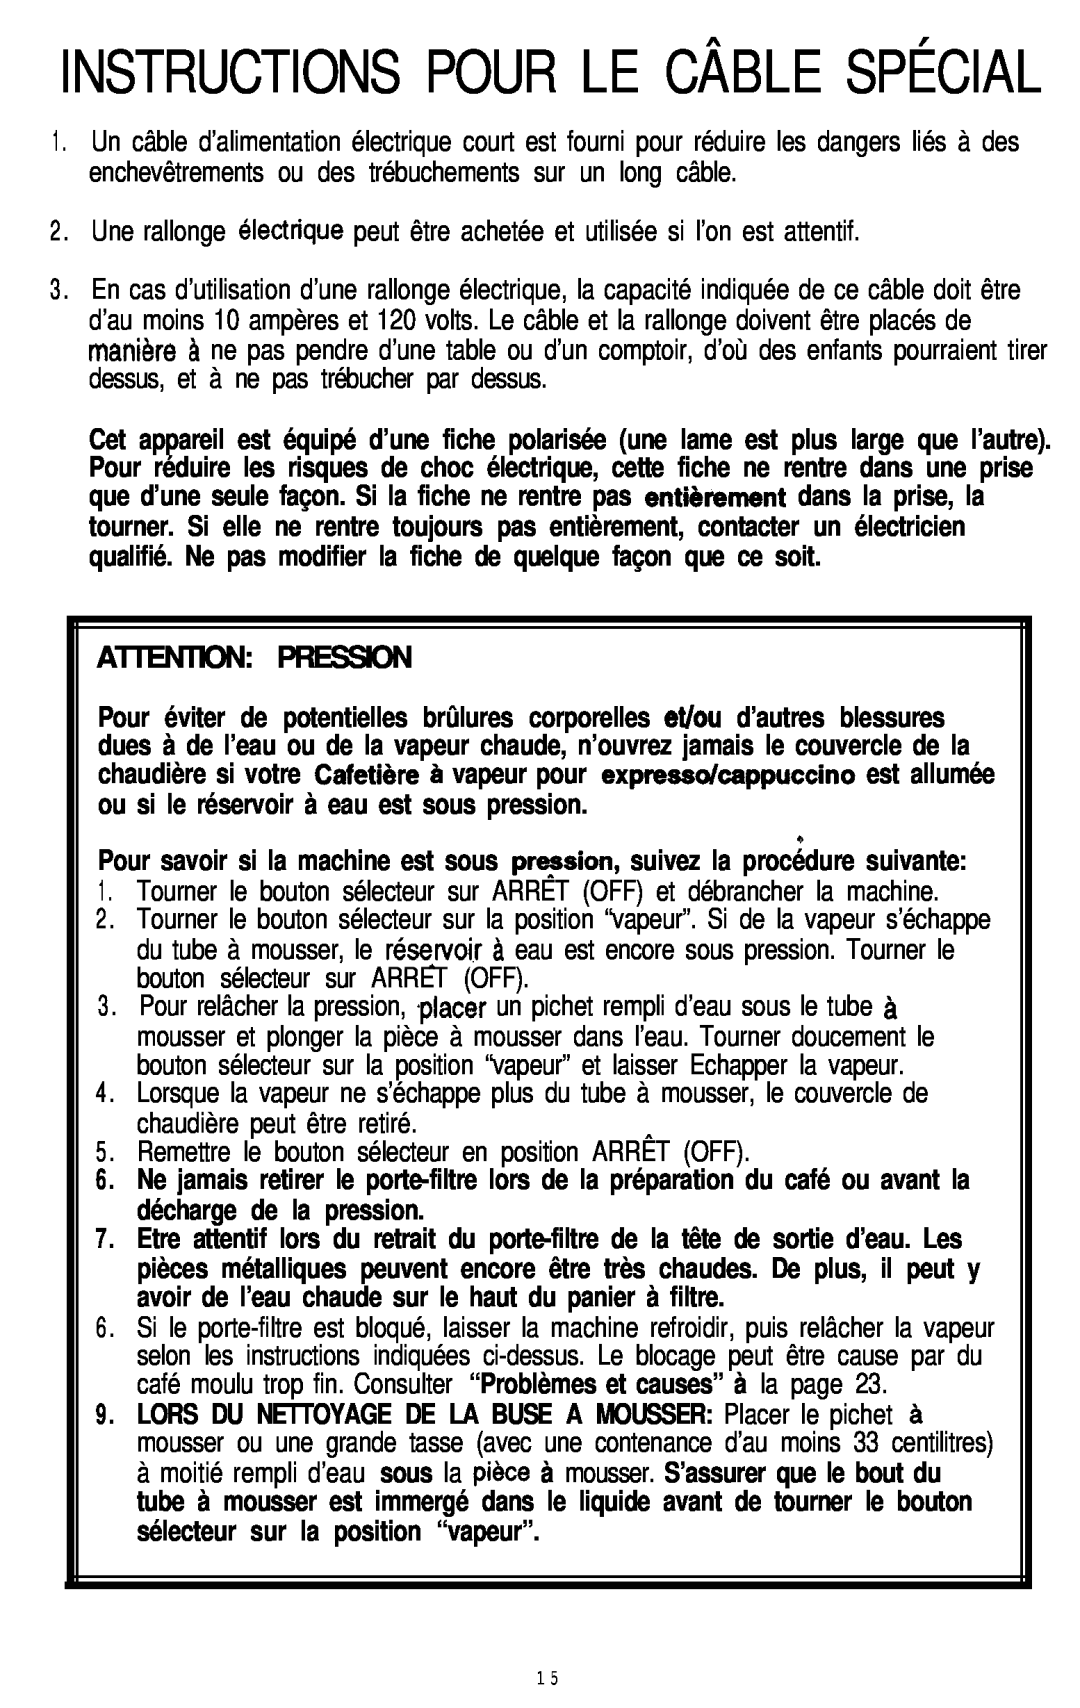 Mr. Coffee ECM9 manual Instructions Pour Le Câble Spécial, Attention Pression 